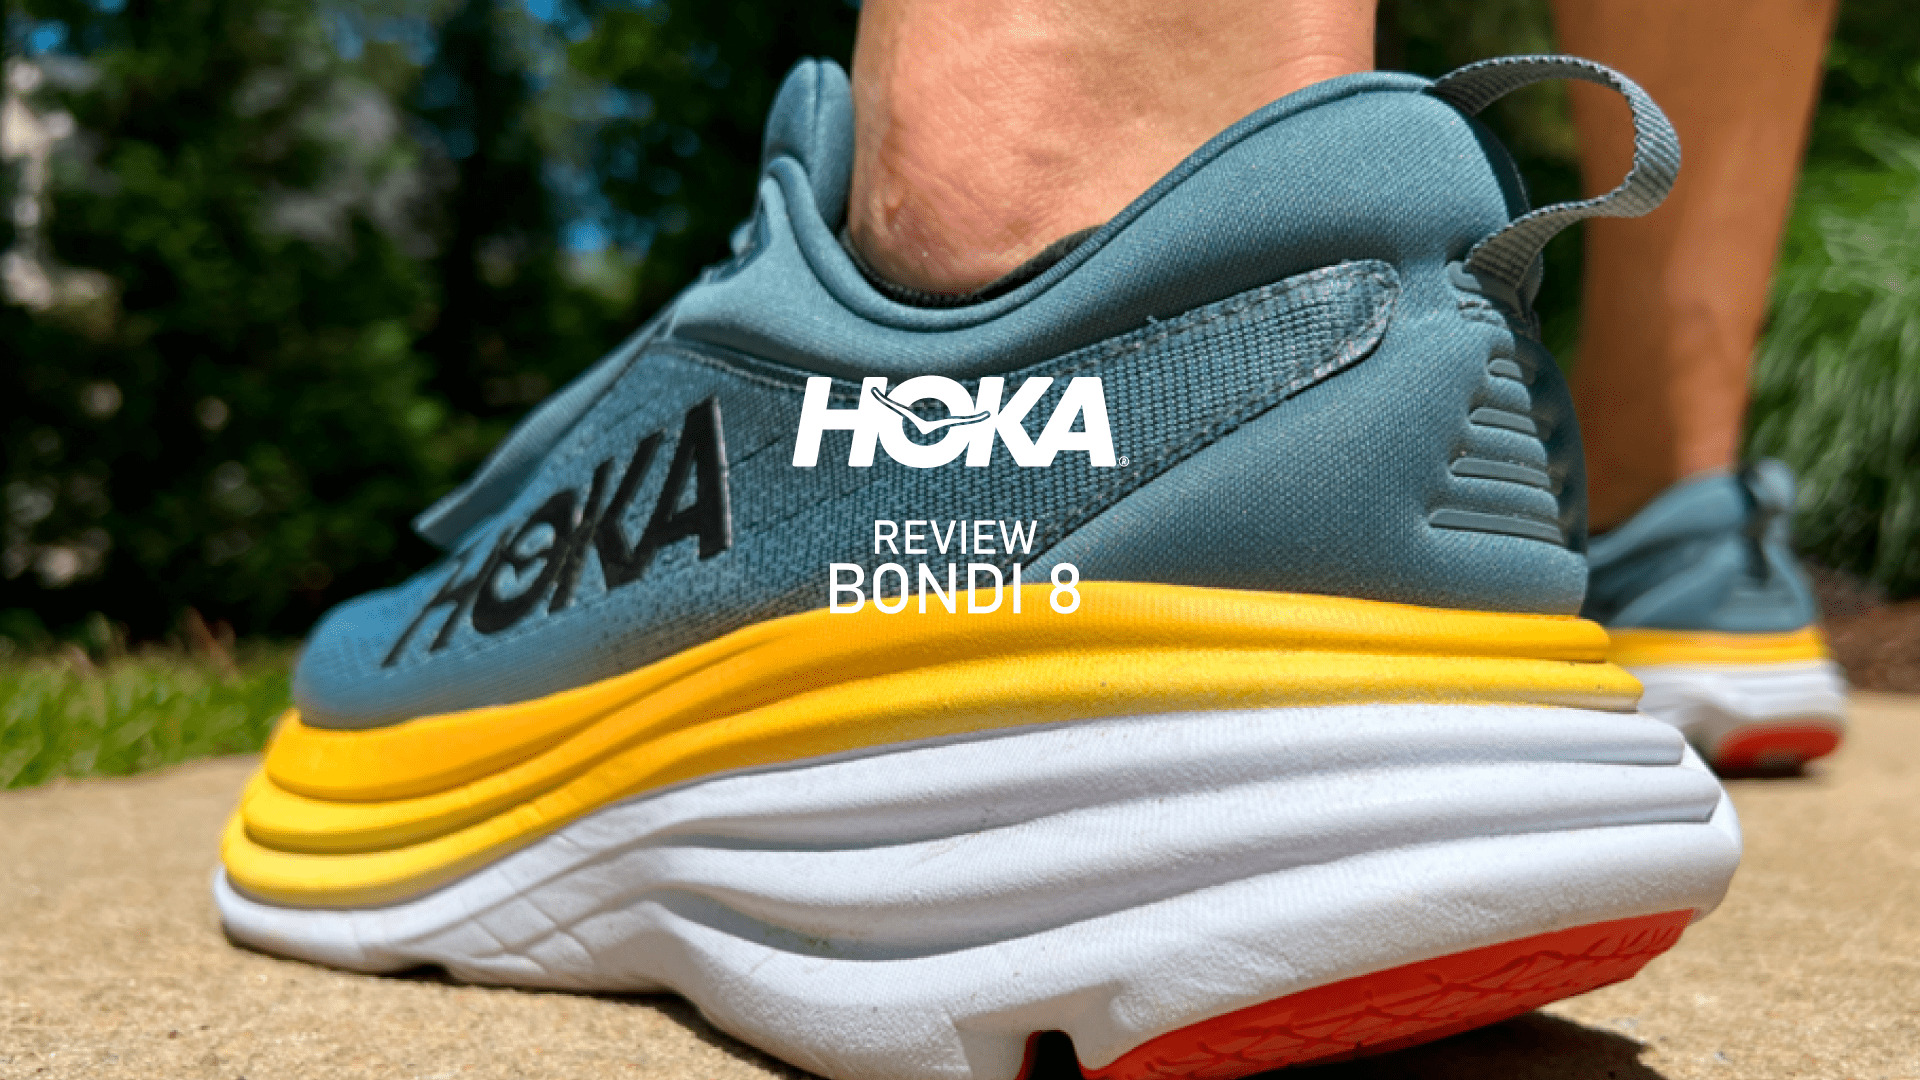 HOKA Bondi 8 - Zapatillas para correr Mujer